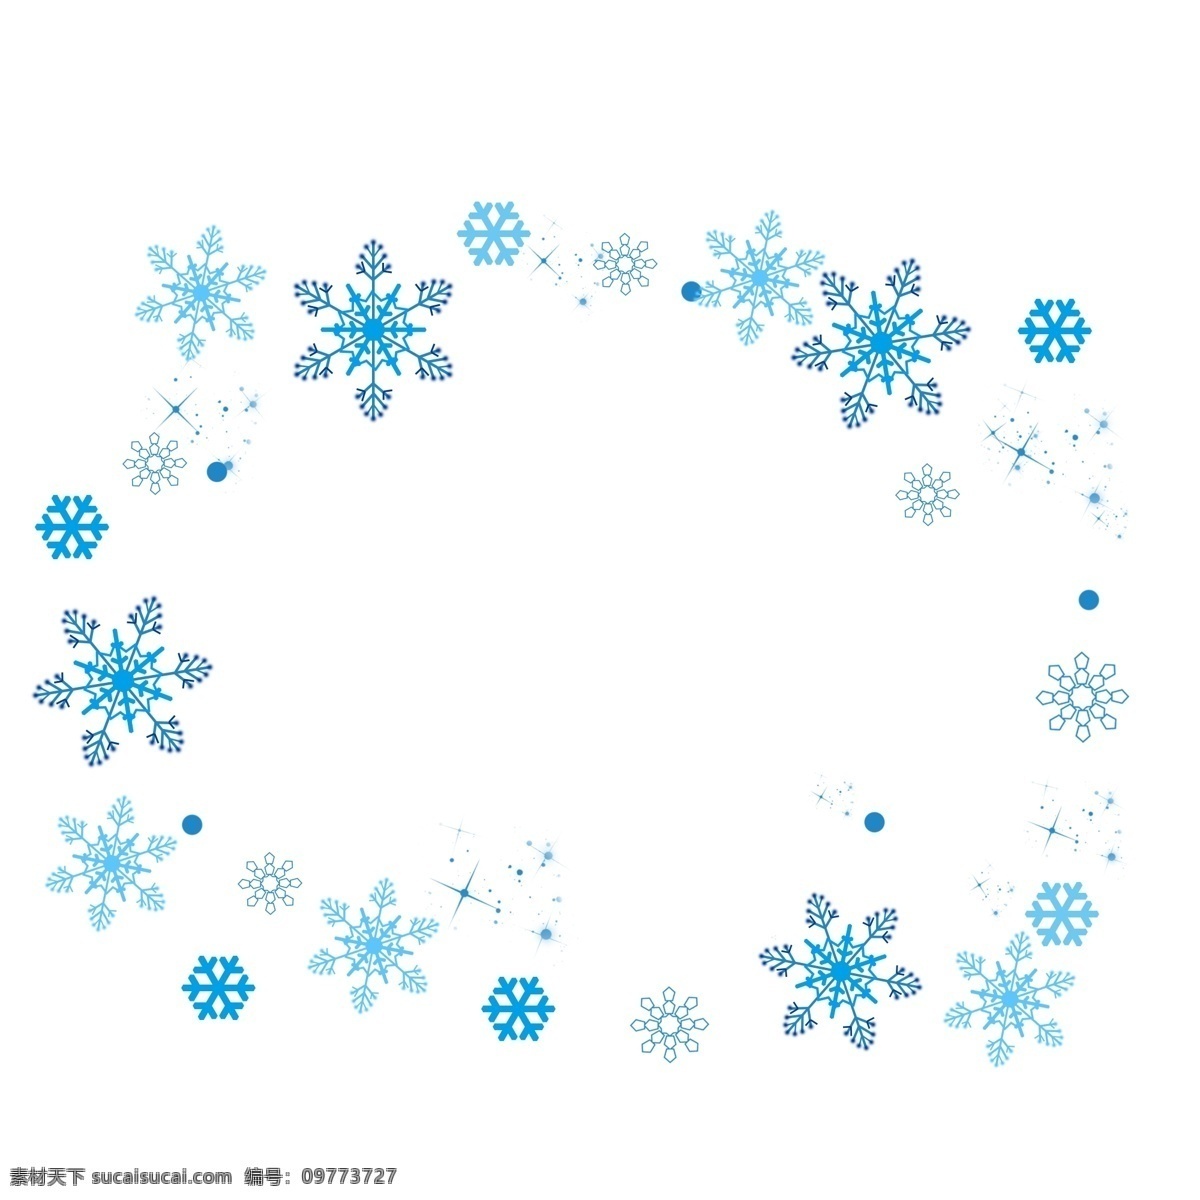 雪 冬天 手绘 飘 蓝色 雪花 冬季 下雪 浪漫 装饰 飘雪